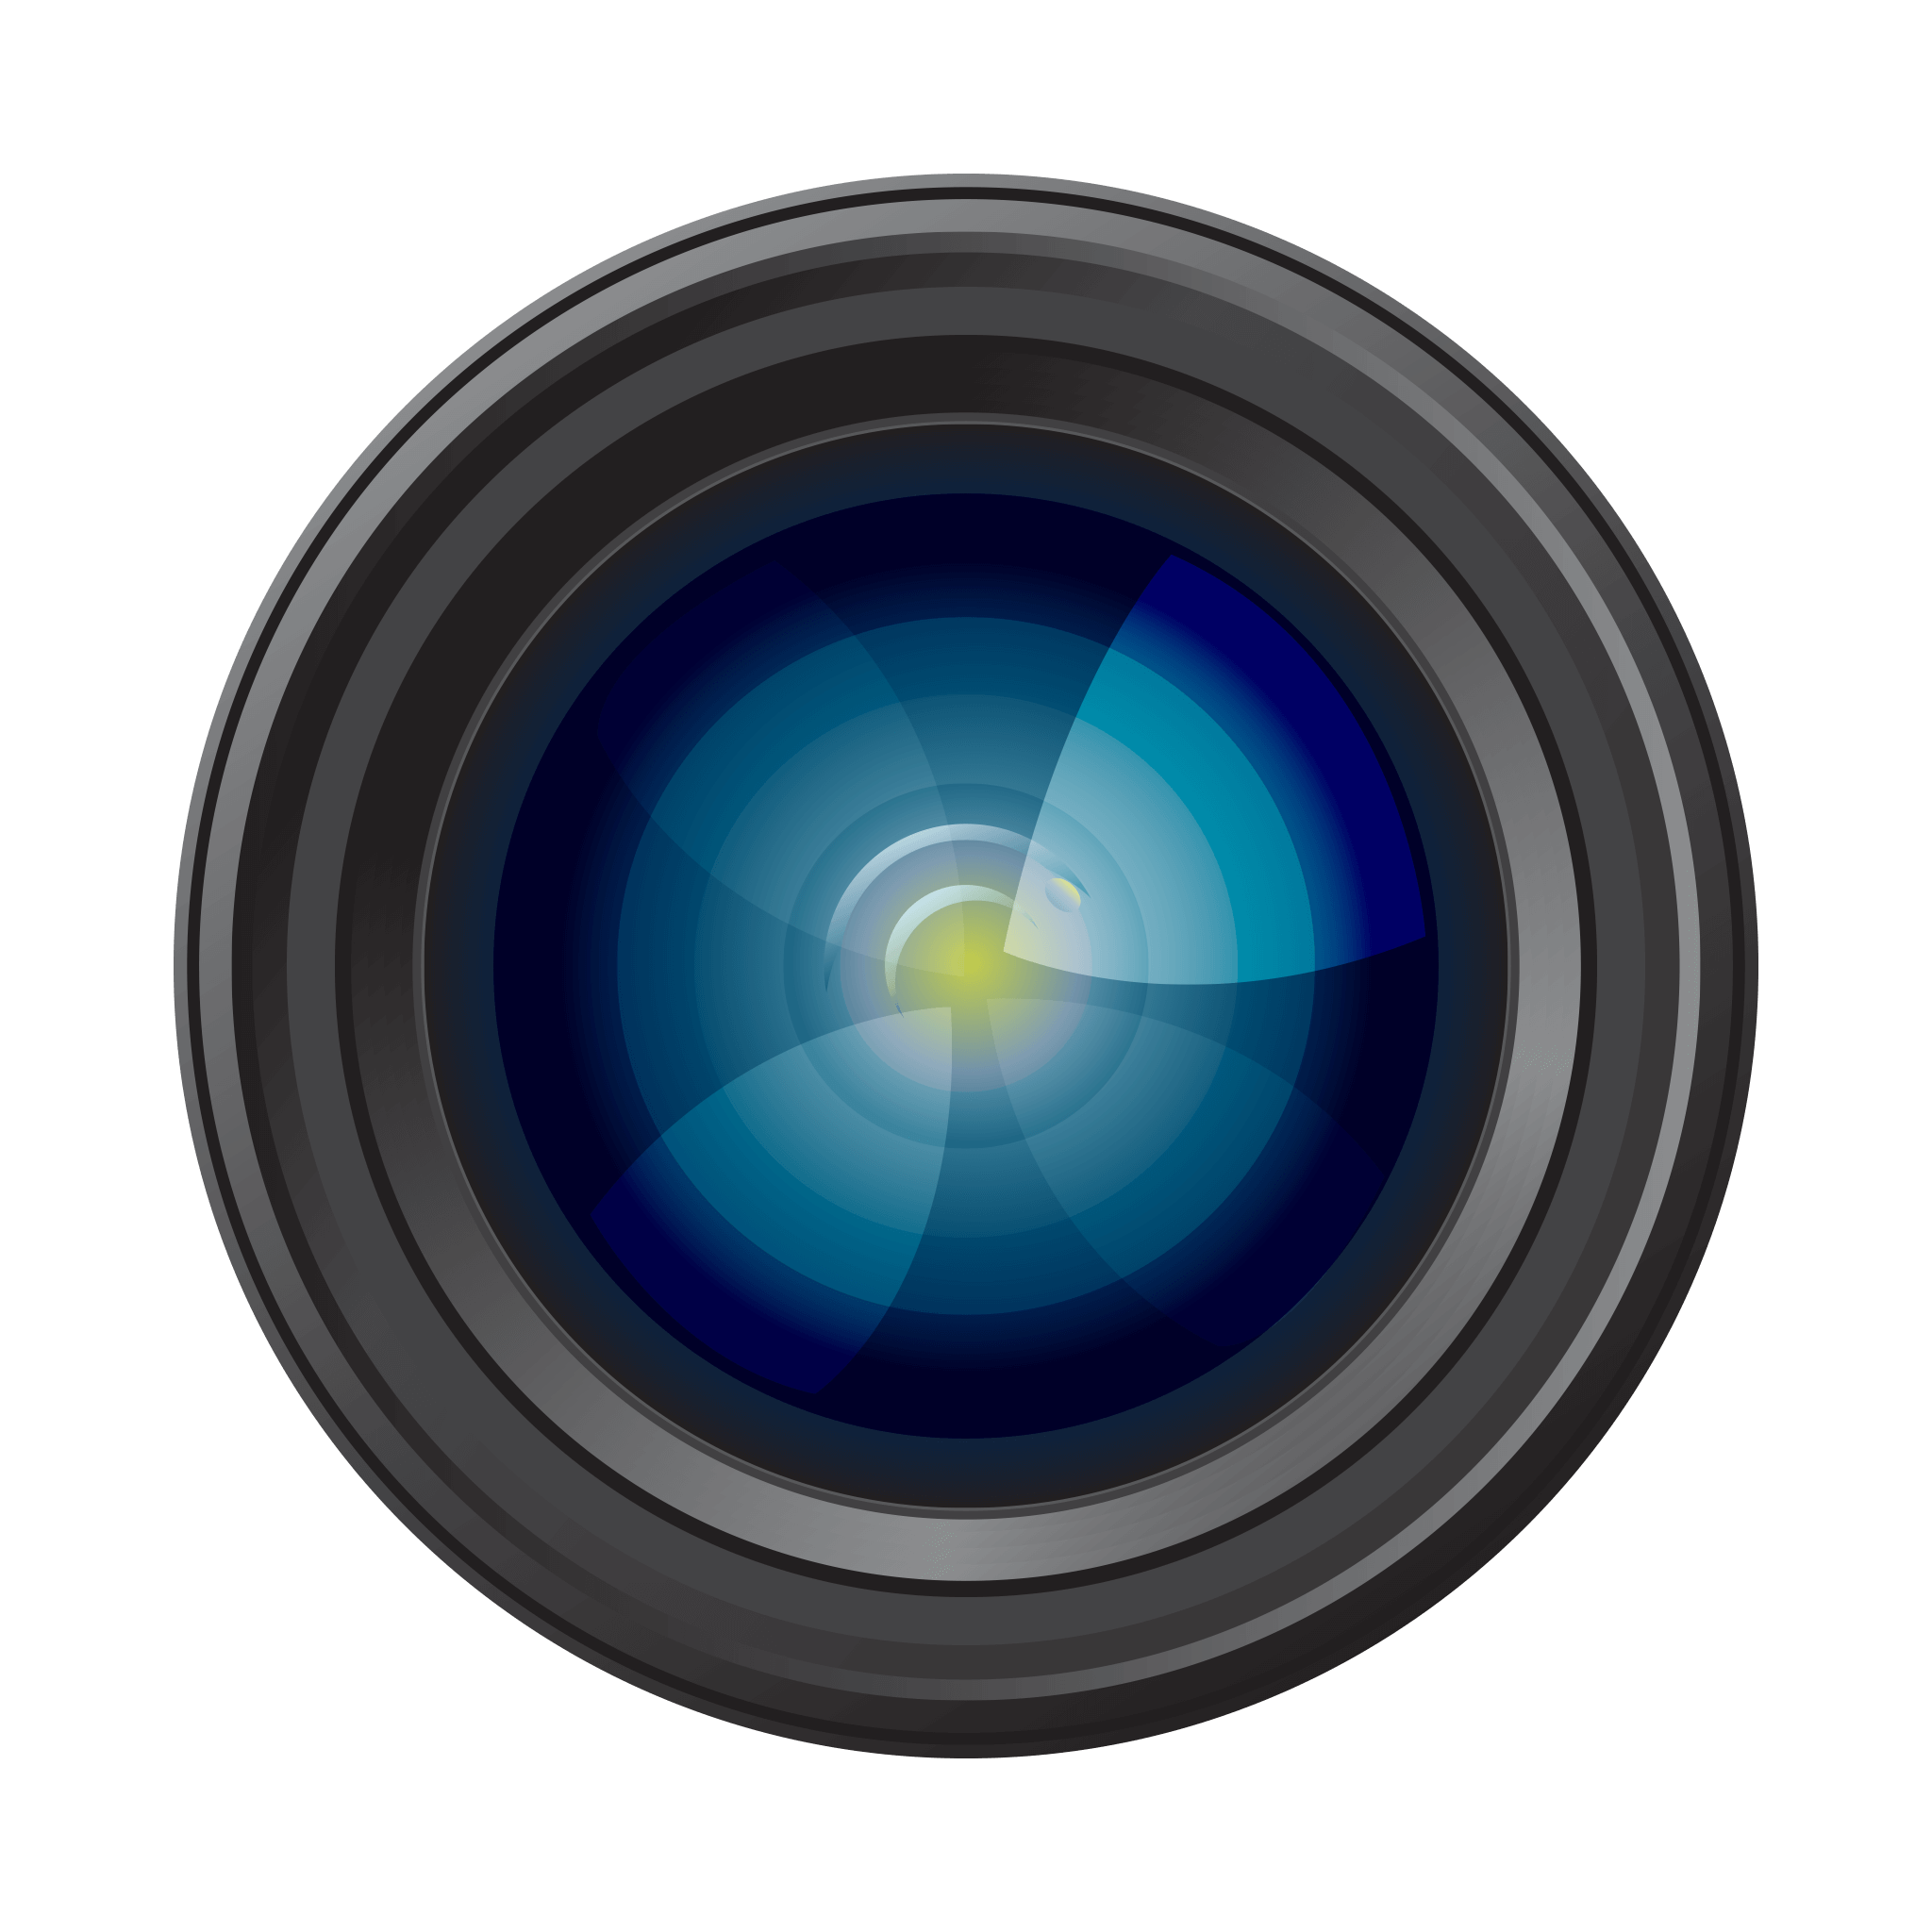 Camera Lens Background PNG Image